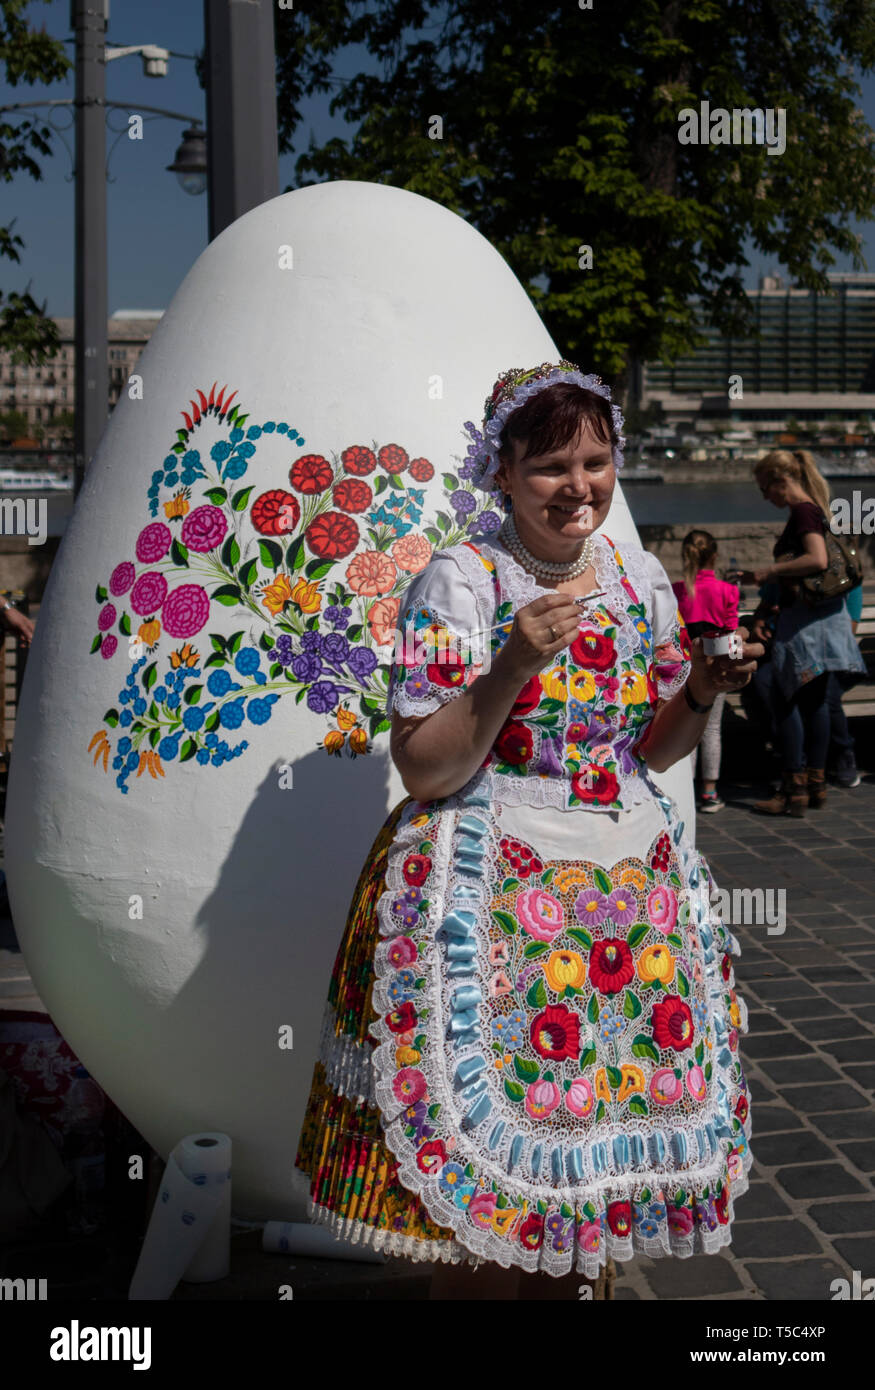 BUDAPEST/UNGARN - 04.21.2019: eine Frau, die Traditionelle bestickte Tracht ziert ein riesiges Osterei mit floralen Mustern. Stockfoto